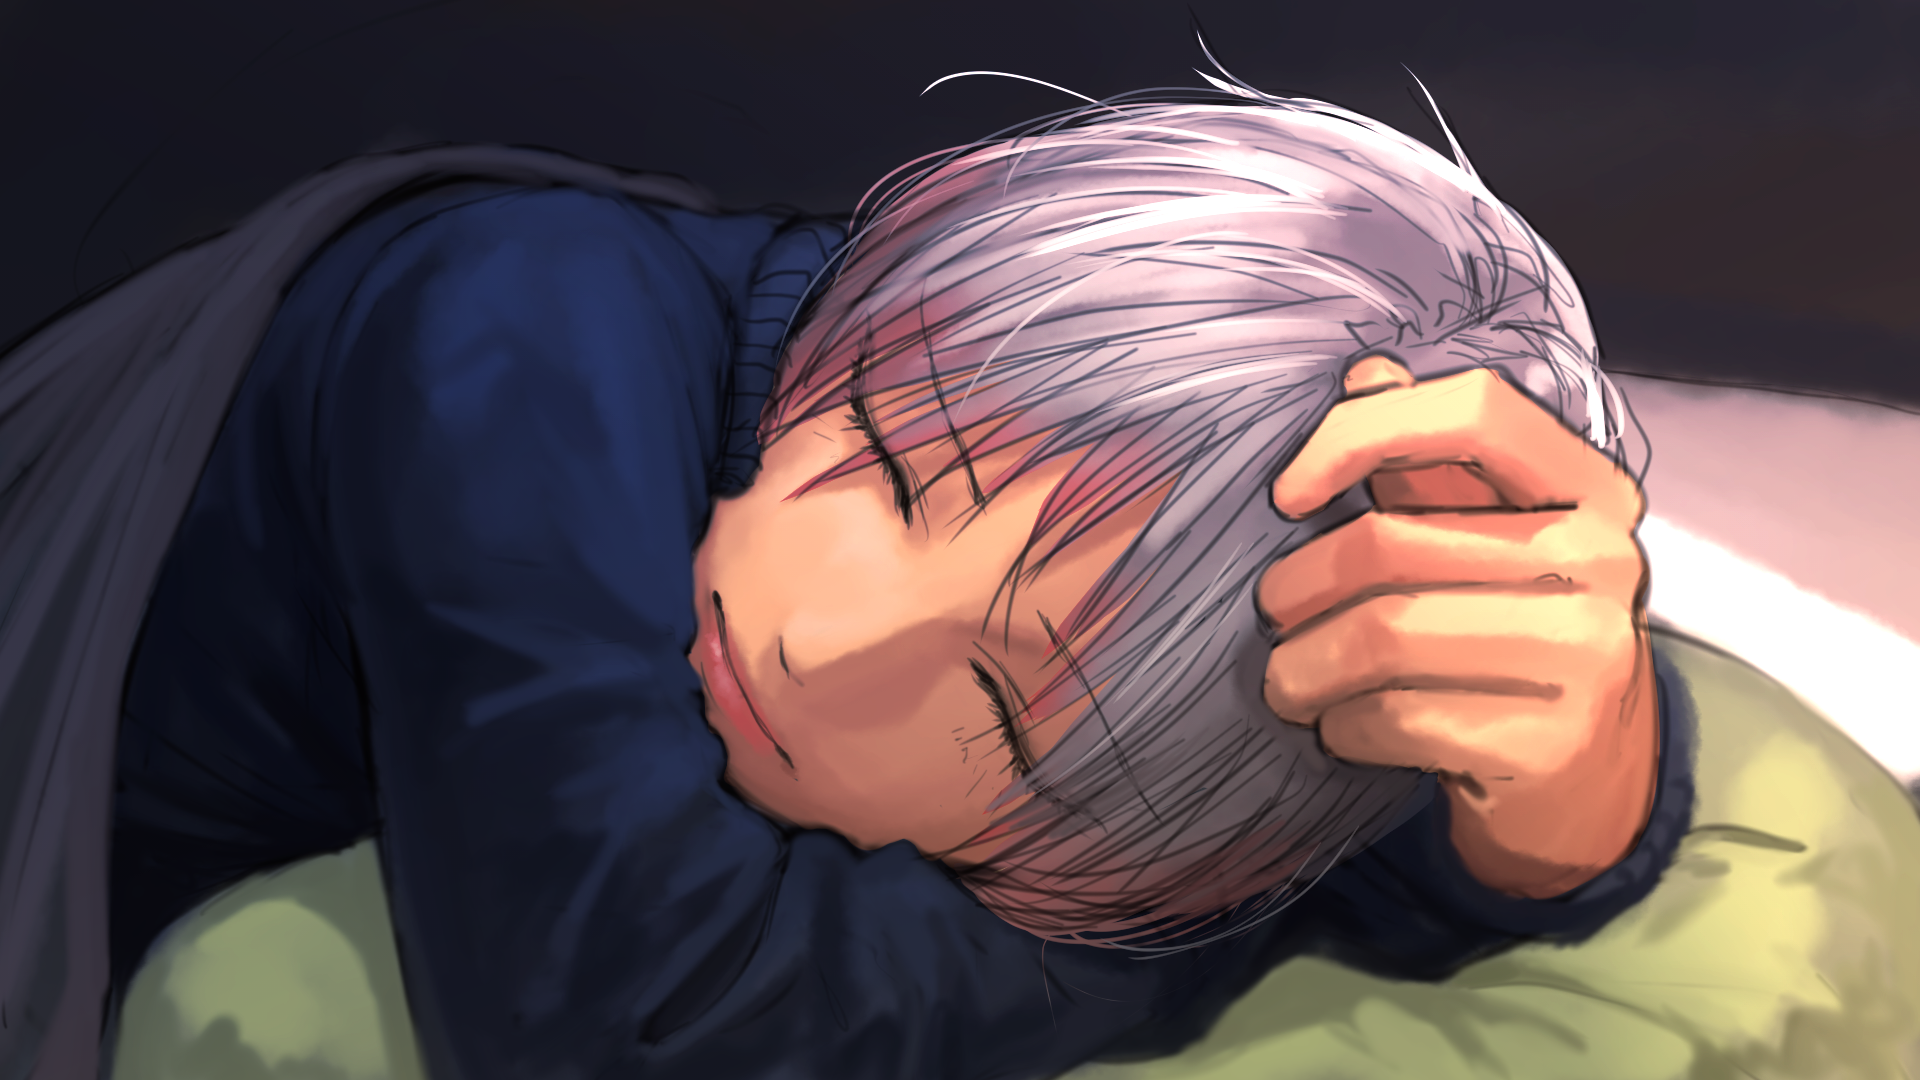 New Anime Sleep Boy , HD Wallpaper & Backgrounds